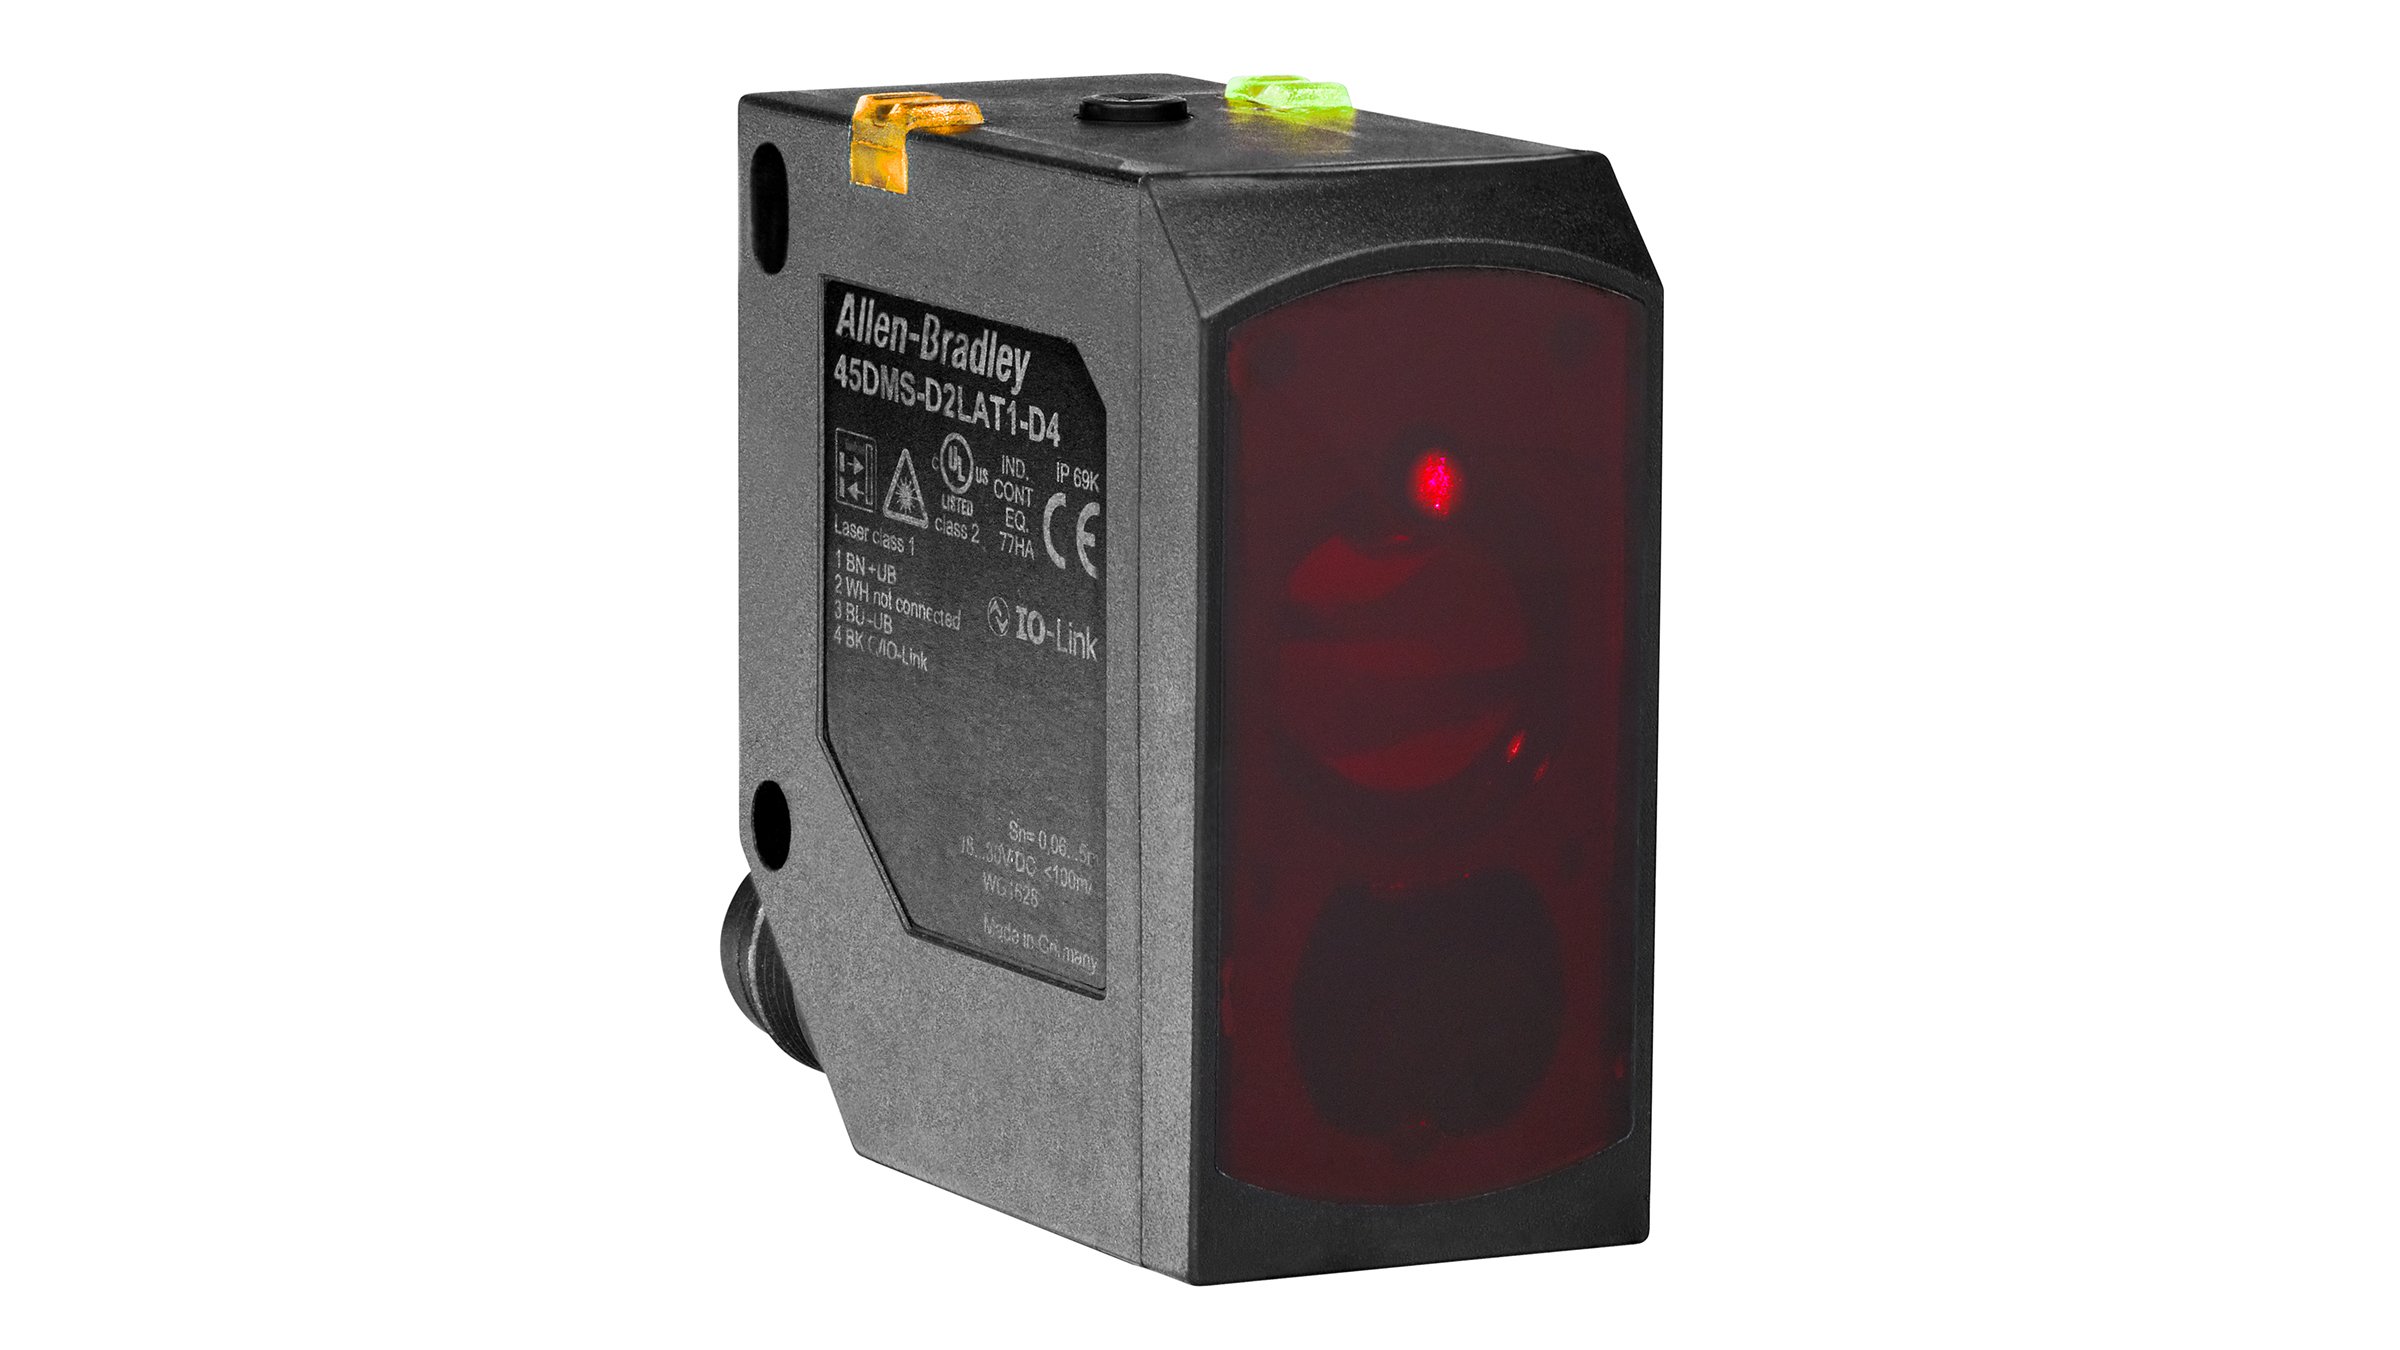 Sensor retangular preto Allen-Bradley com lente vermelha e indicador LED amarelo e verde na parte superior.